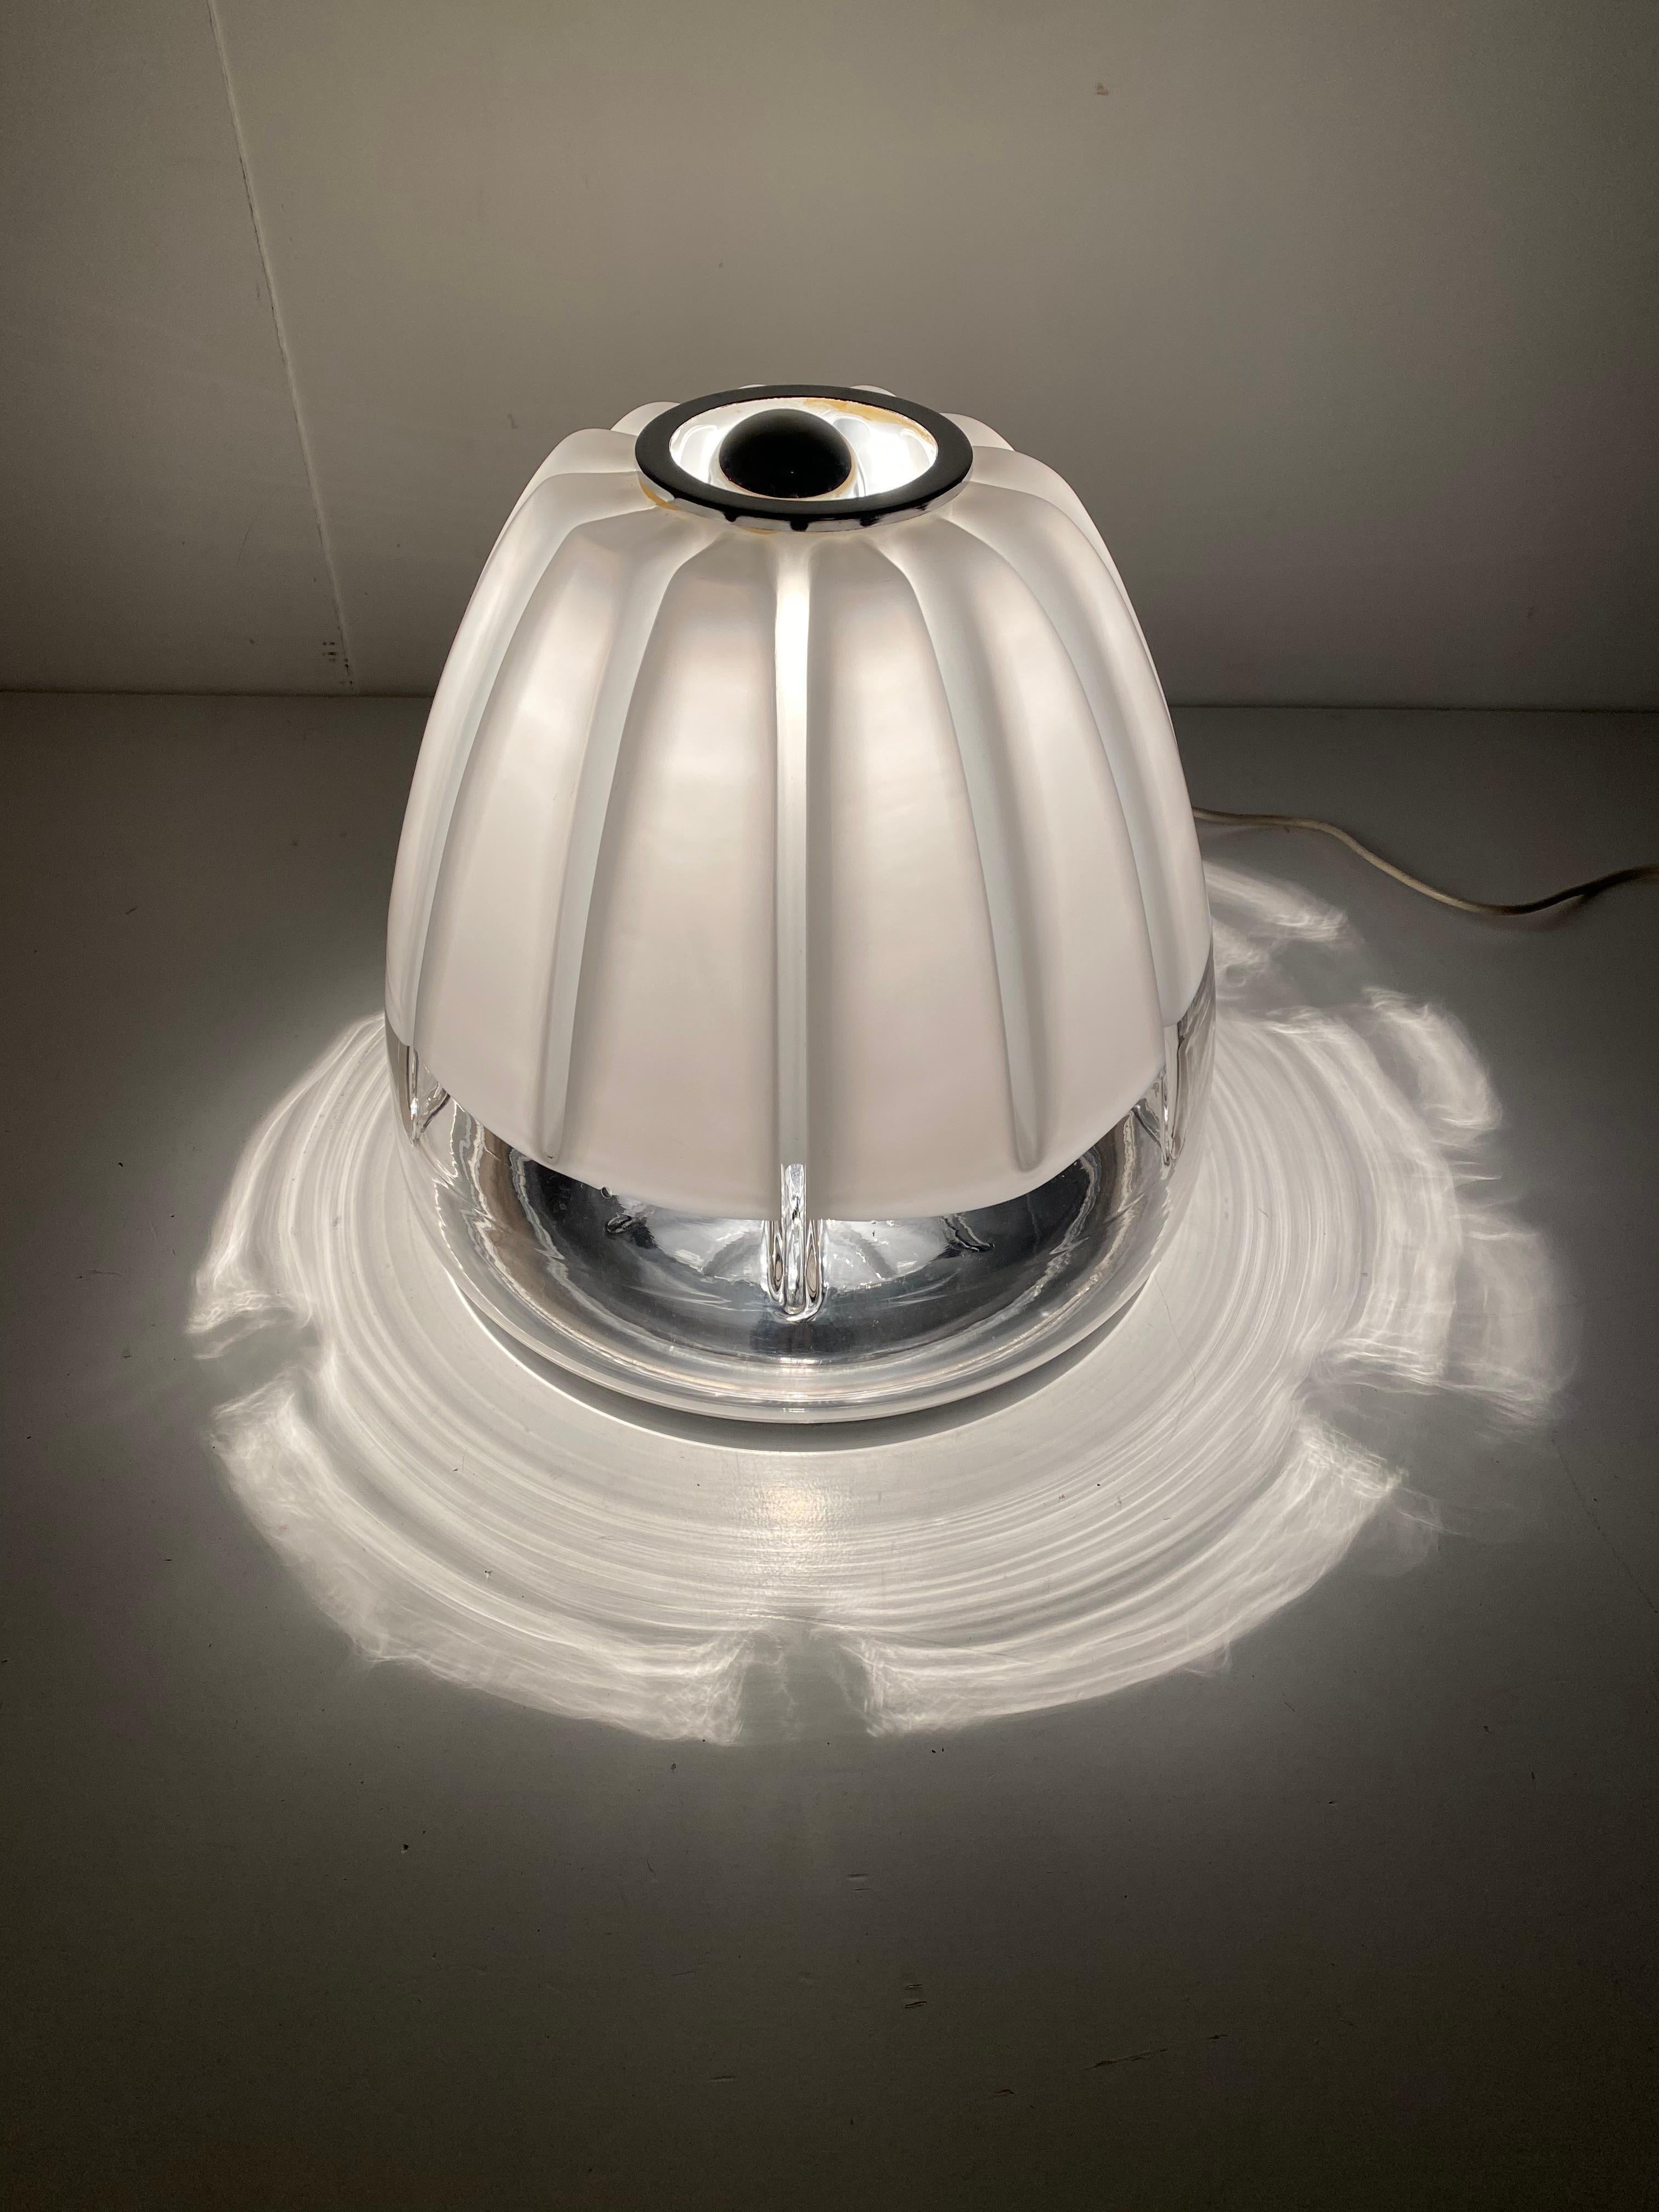 Lampe de table des années 1970 par Toni Zuccheri pour VeArt Italie 

Verre de Murano vénitien fabriqué artisanalement en transparent et blanc sur une base chromée.

La lampe a un corps en verre sphérique avec douze plis repliés vers l'intérieur et